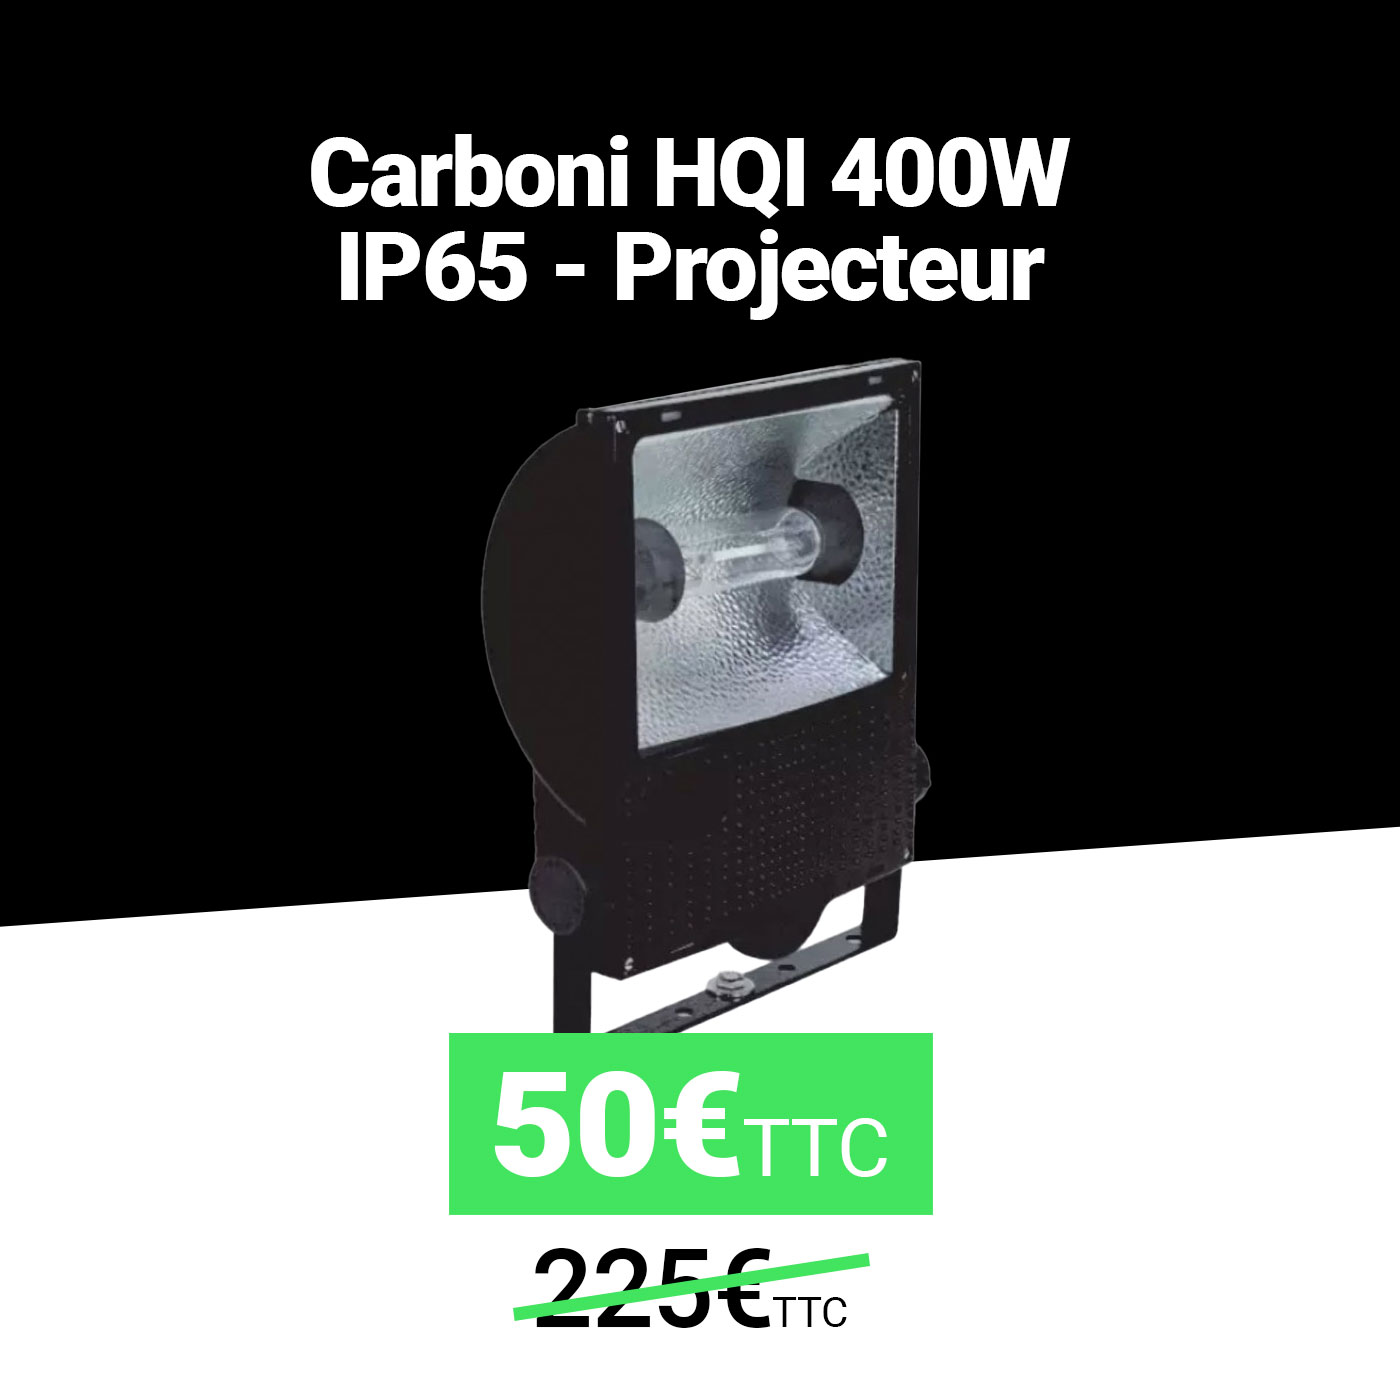 Carboni HQI 400W - IP65 - Projecteur